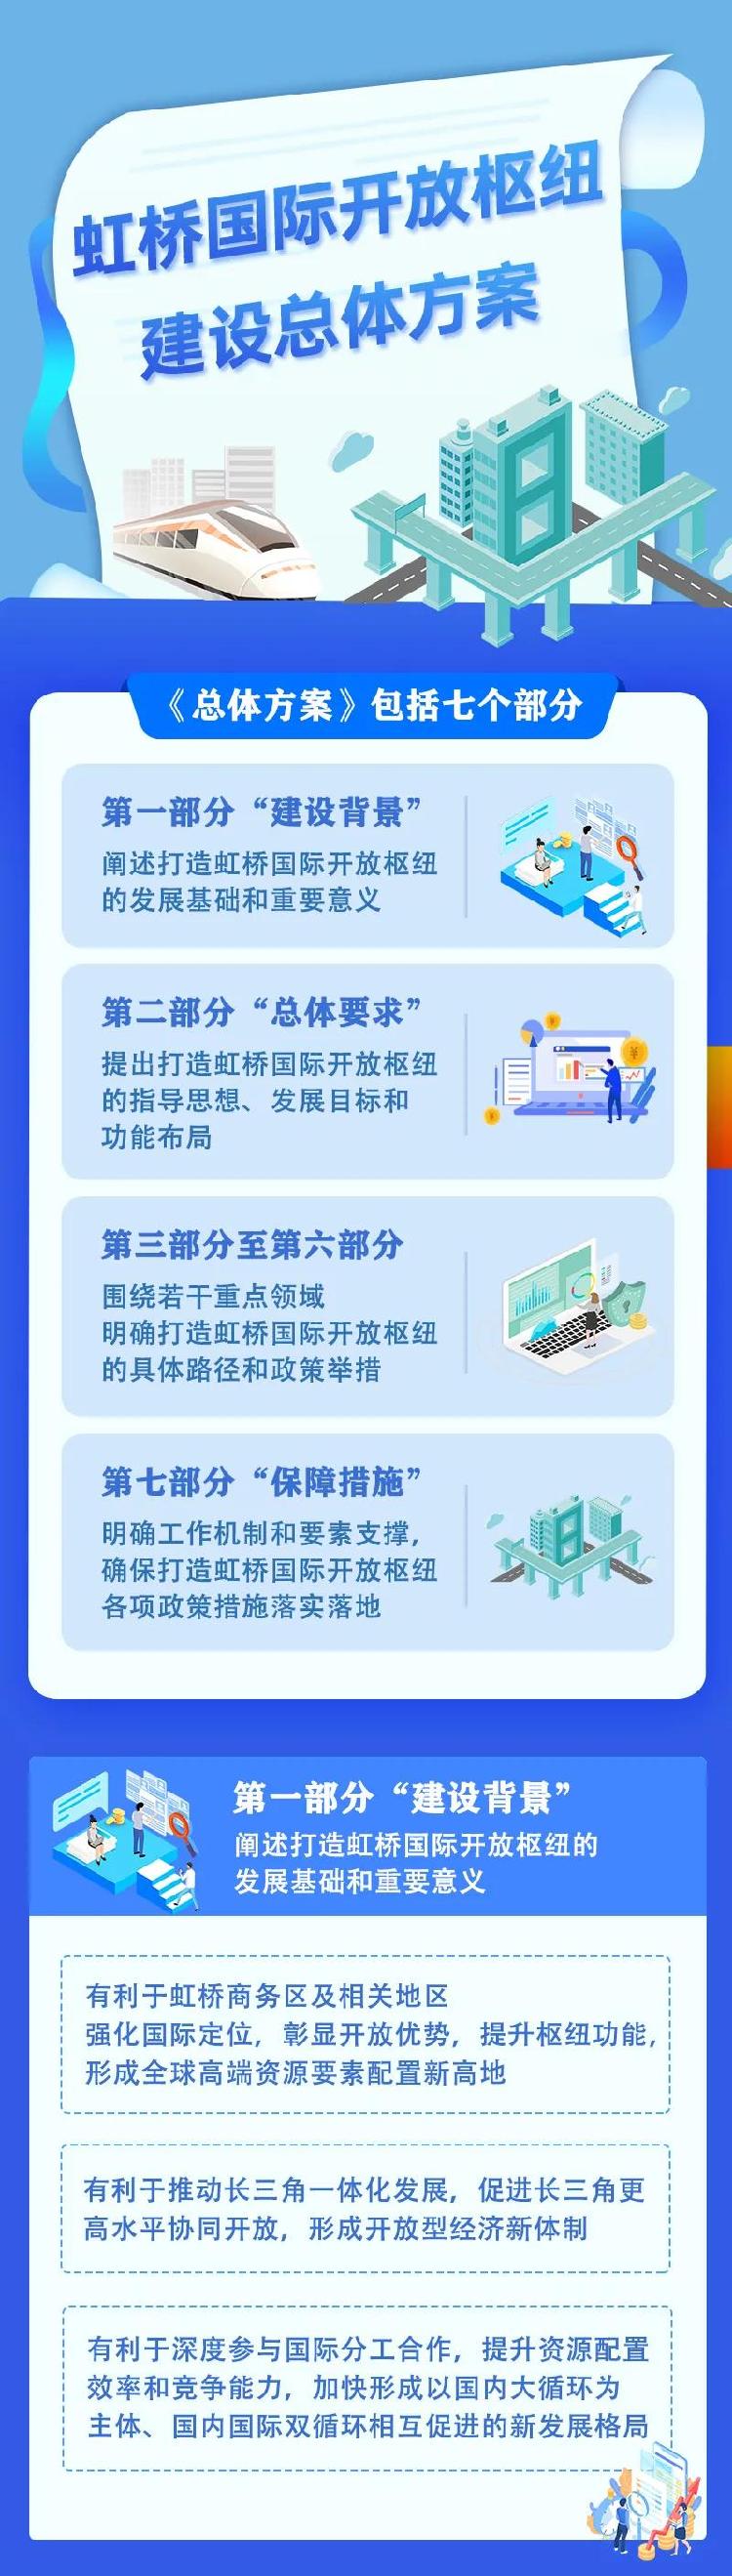 上海虹桥国际开放枢纽总体方案公布 将打造“一核两带”布局